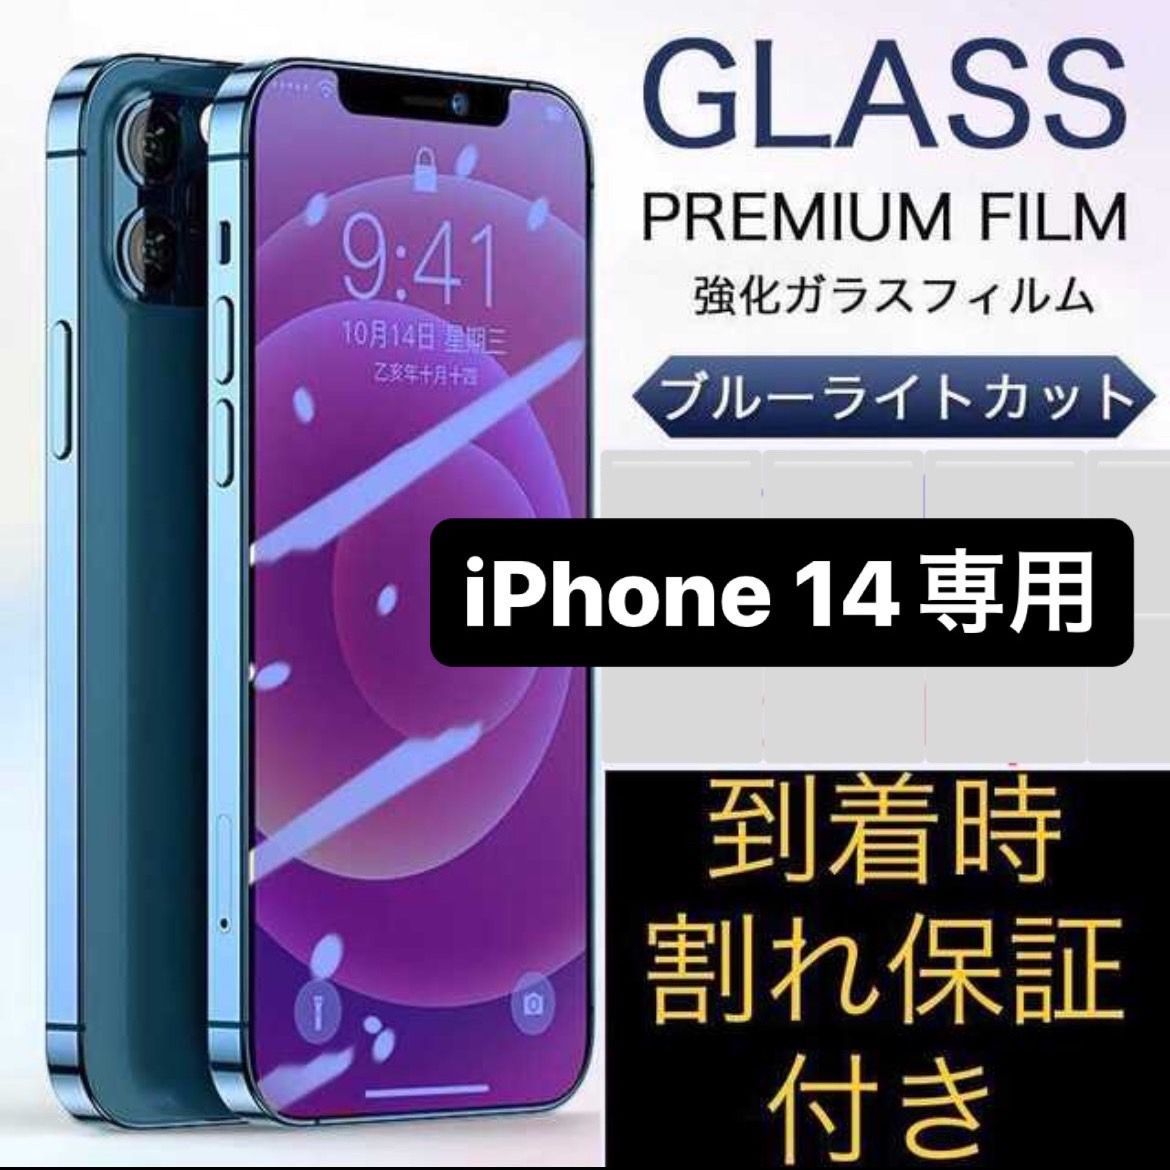 iPhone14 ☆専用ページ 液晶フィルム 保護フィルム ガラスフィルム ブルーライトカット フィルム iPhone アイフォン14  アイフォン14pro max - メルカリShops